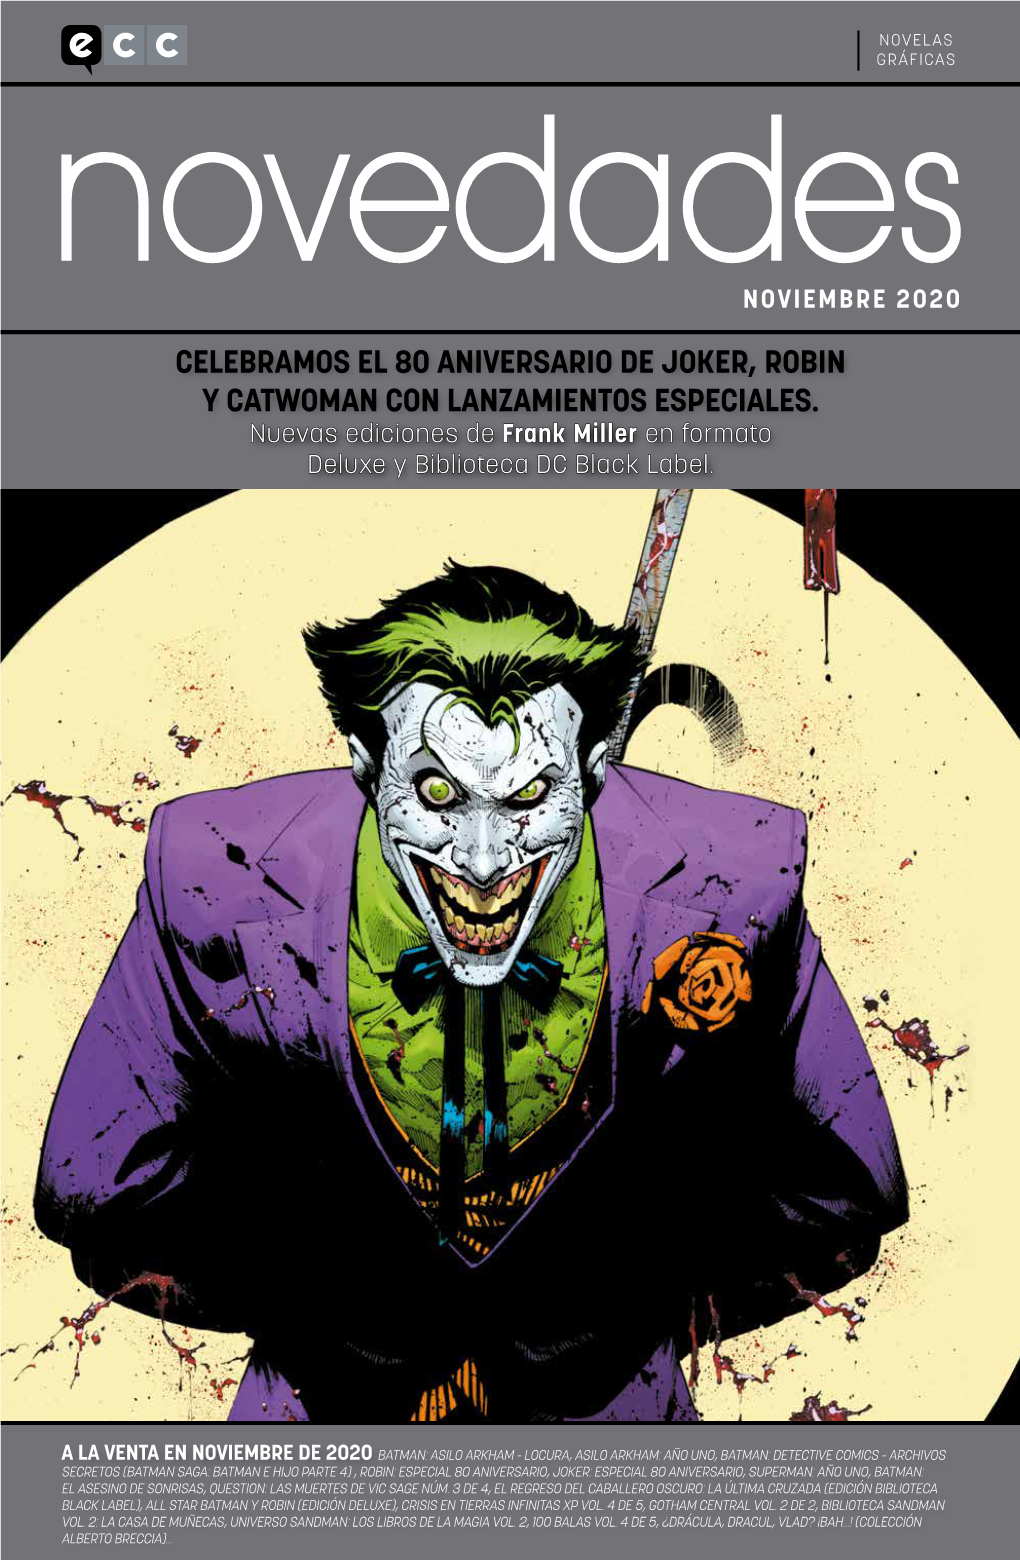 Celebramos El 80 Aniversario De Joker, Robin Y Catwoman Con Lanzamientos Especiales